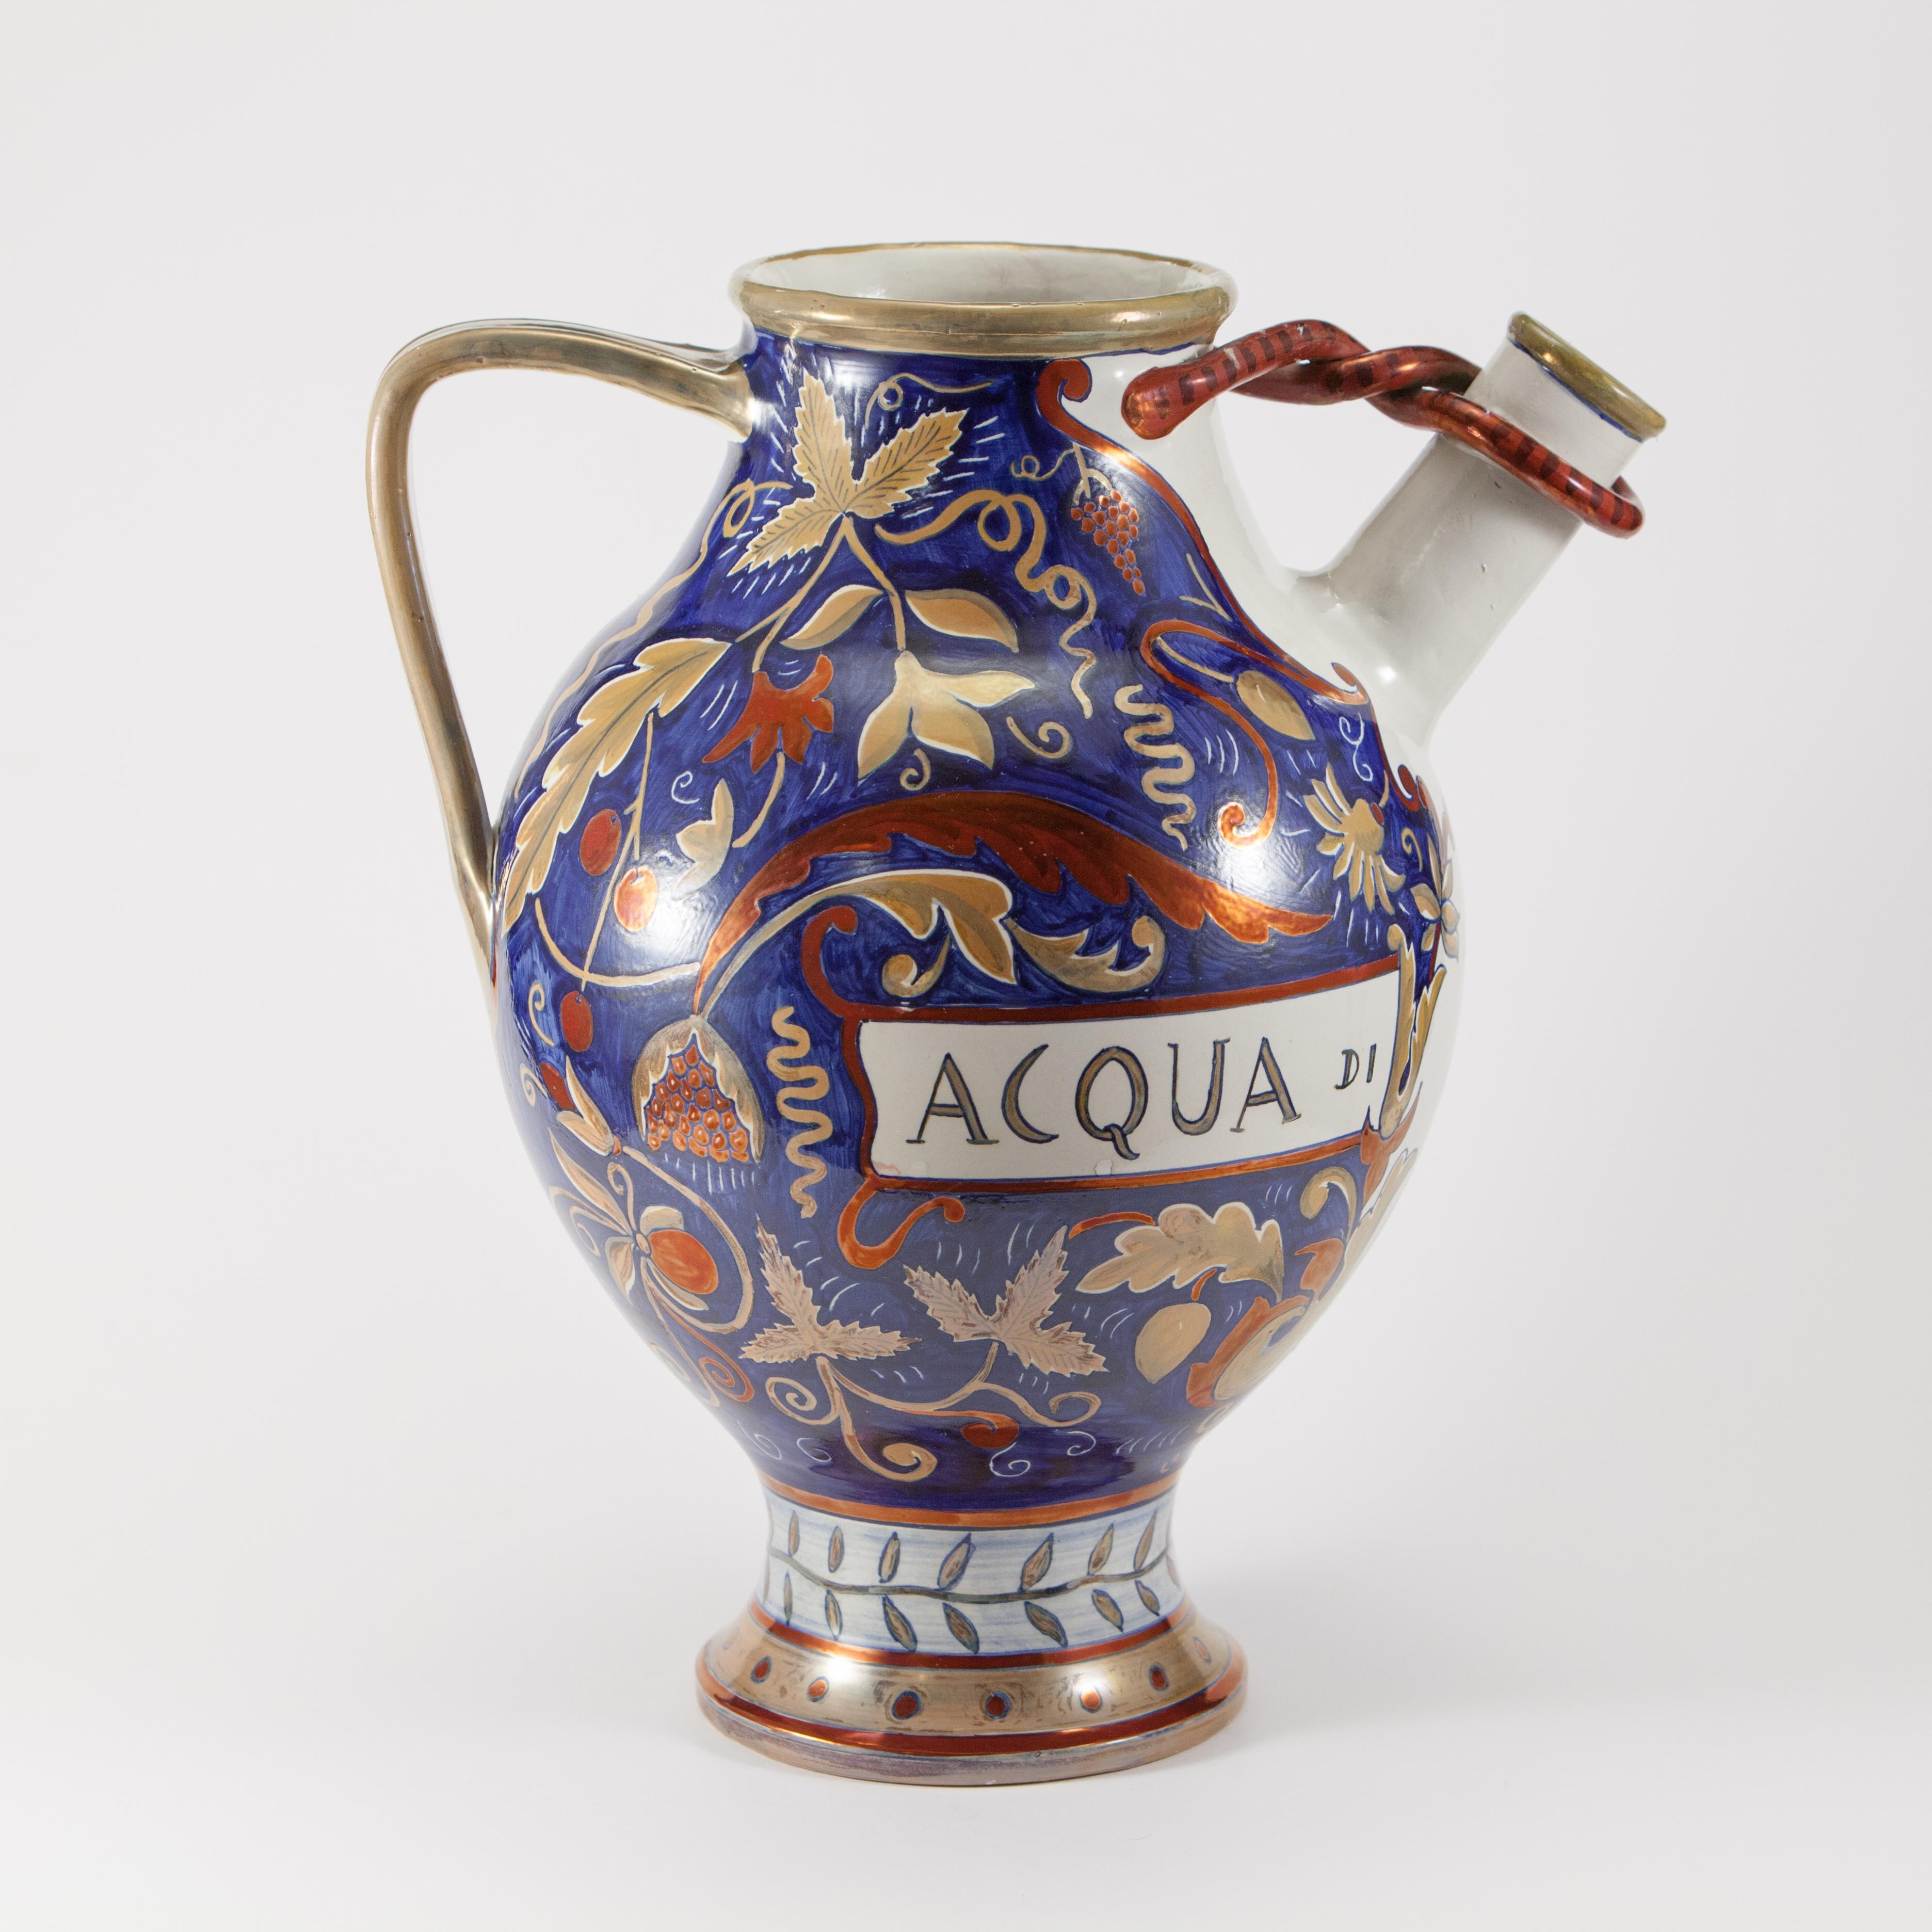 Verseur en majolique lustrée, céramique artistique 'Bottega Ceramica', 1920/30 - Art de Bottega ceramica di Angelo Pascucci